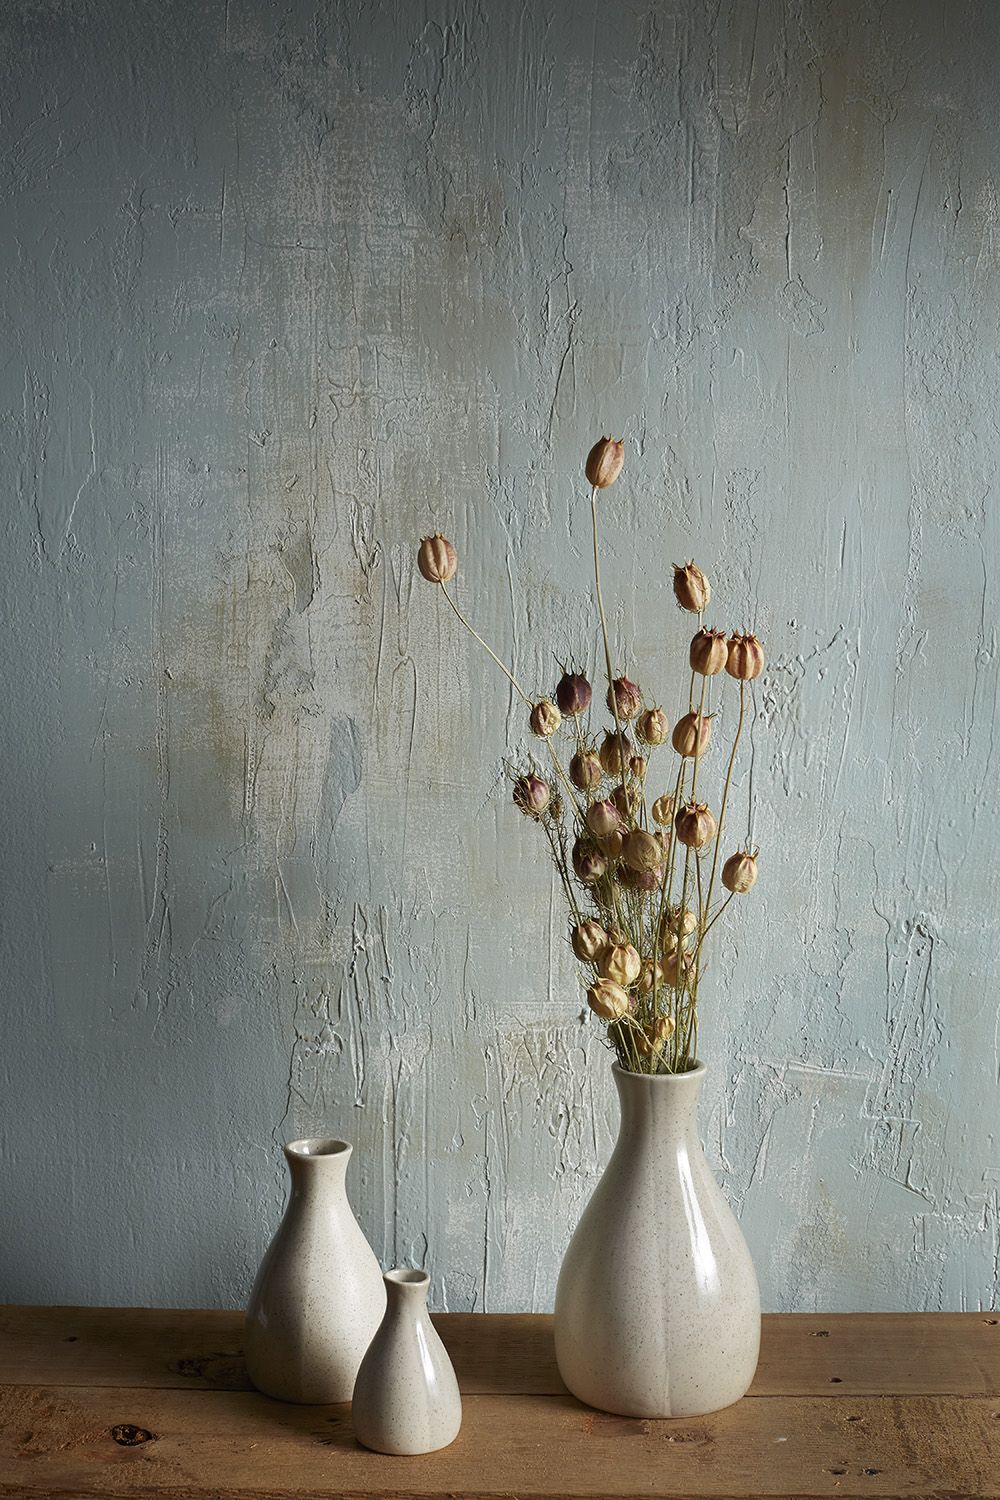 Allium Vase, Large